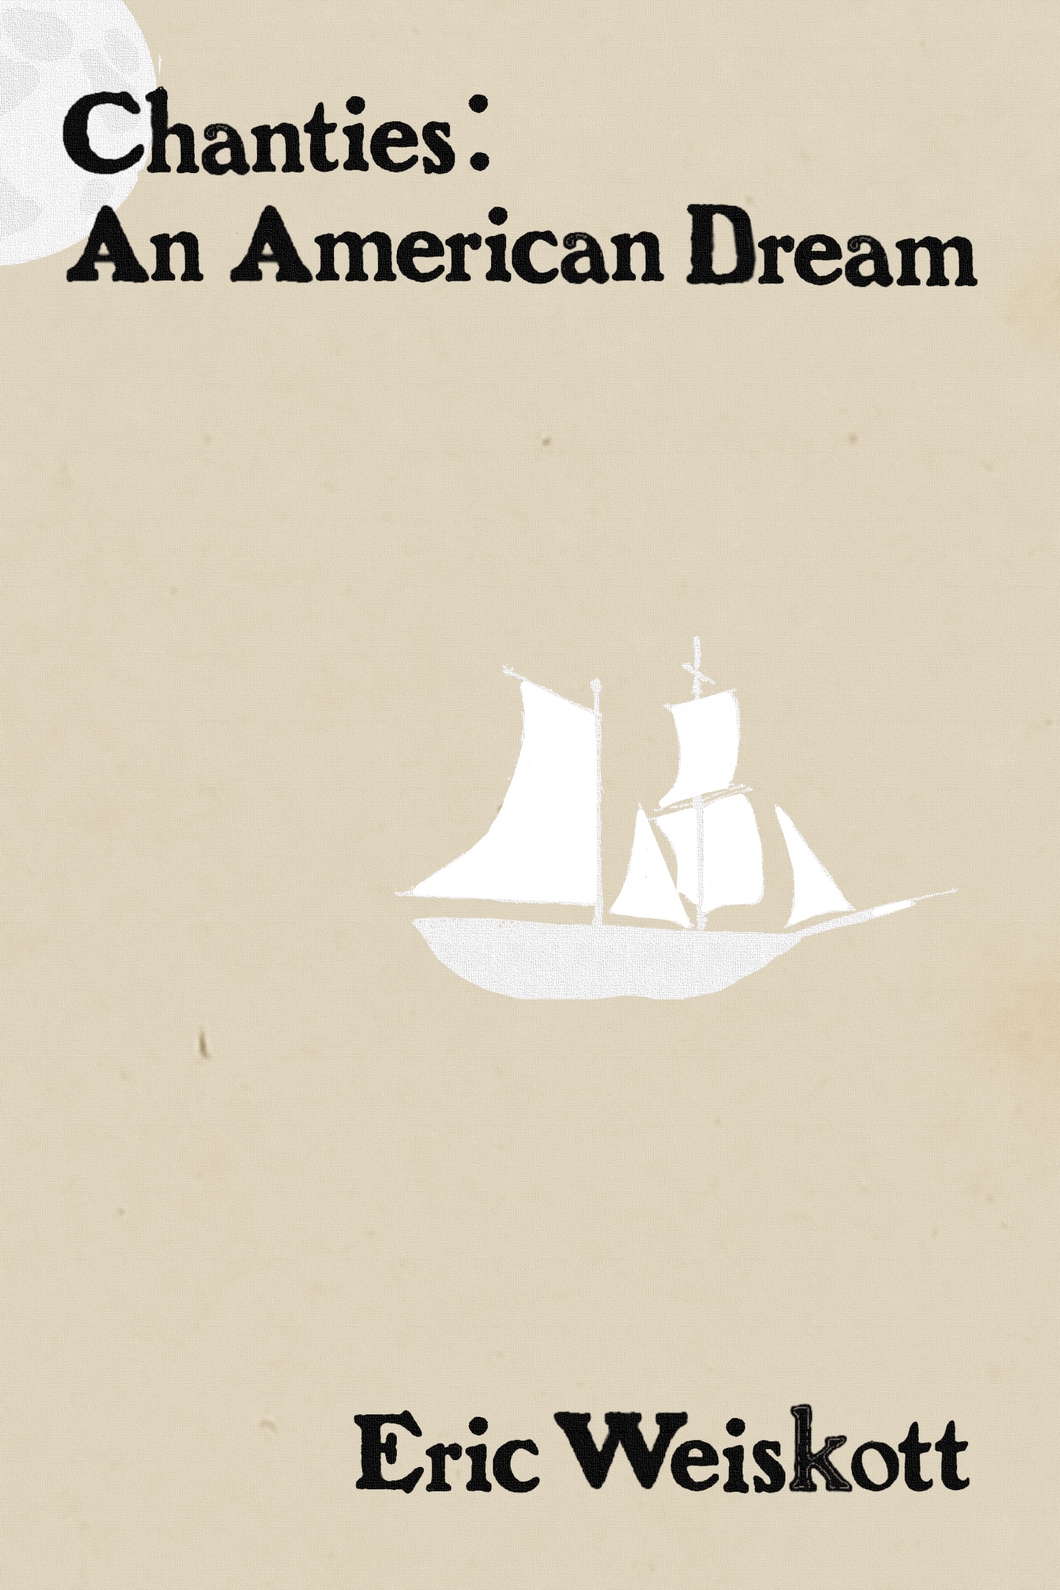 Chanties: An American Dream, by Eric Weiskott-Print Books-Bottlecap Press